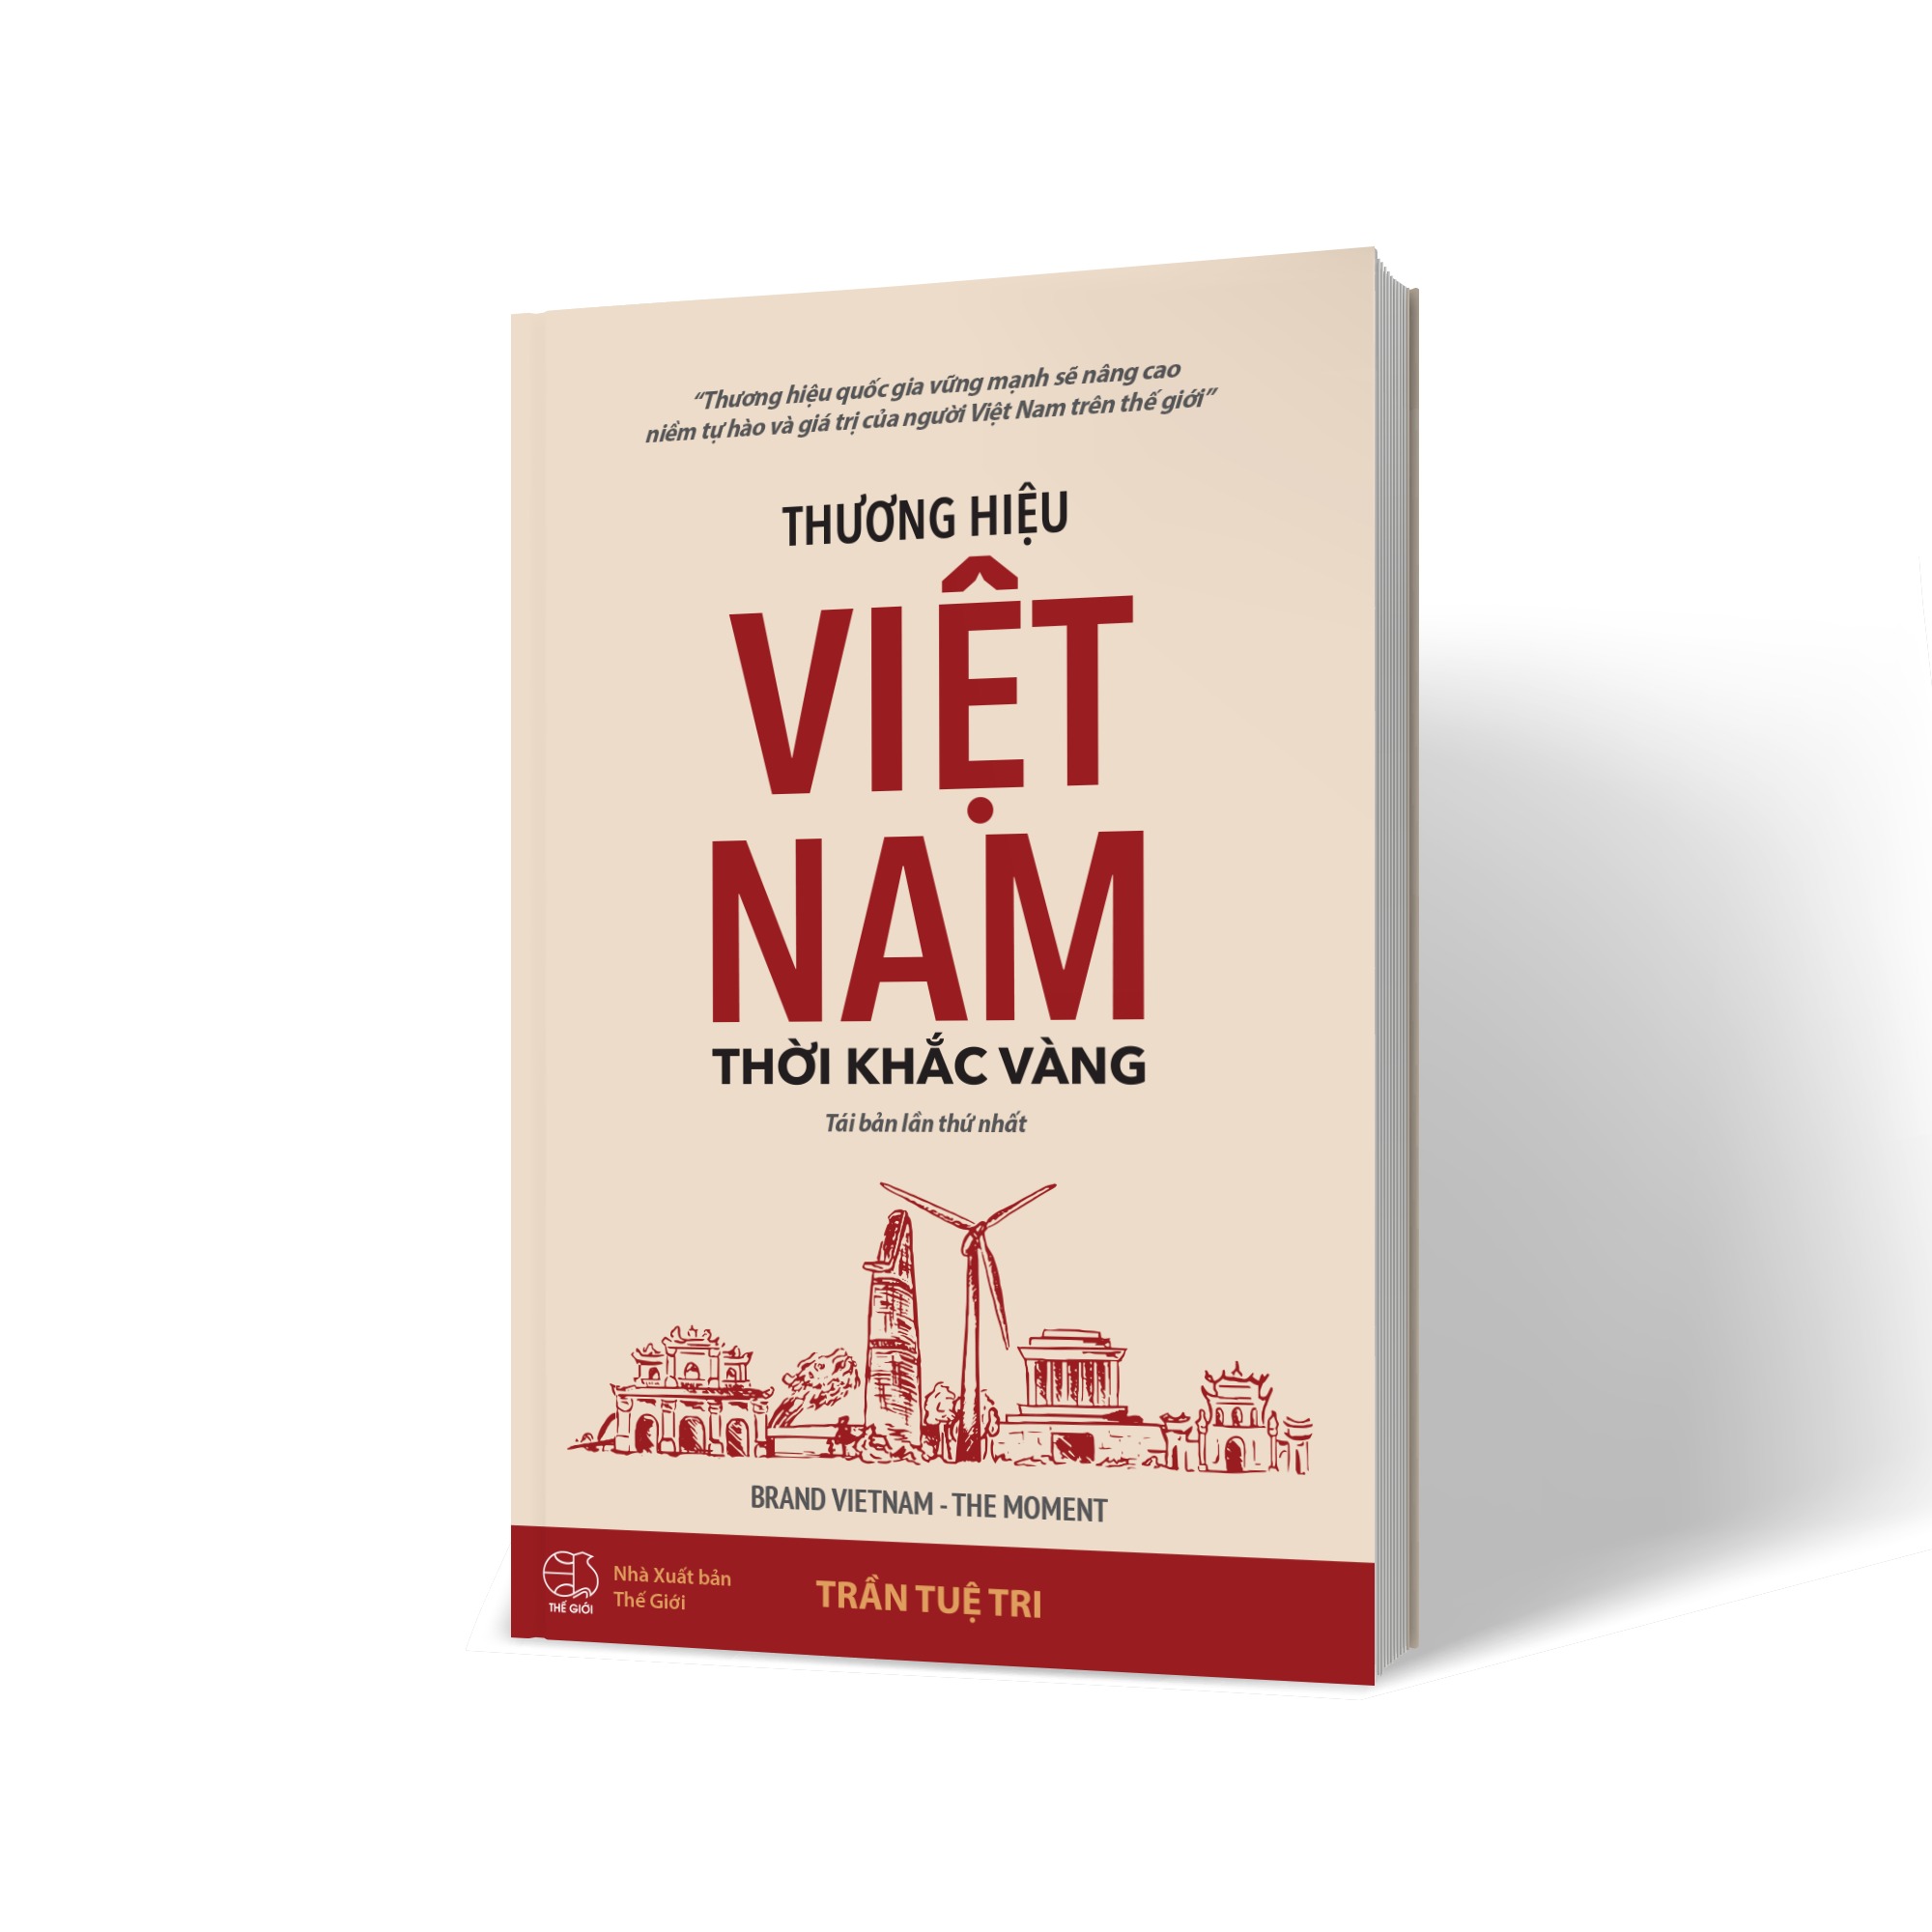 Hình ảnh Thương hiệu Việt Nam - Thời khắc vàng (BRAND VIETNAM THE MOMENT)